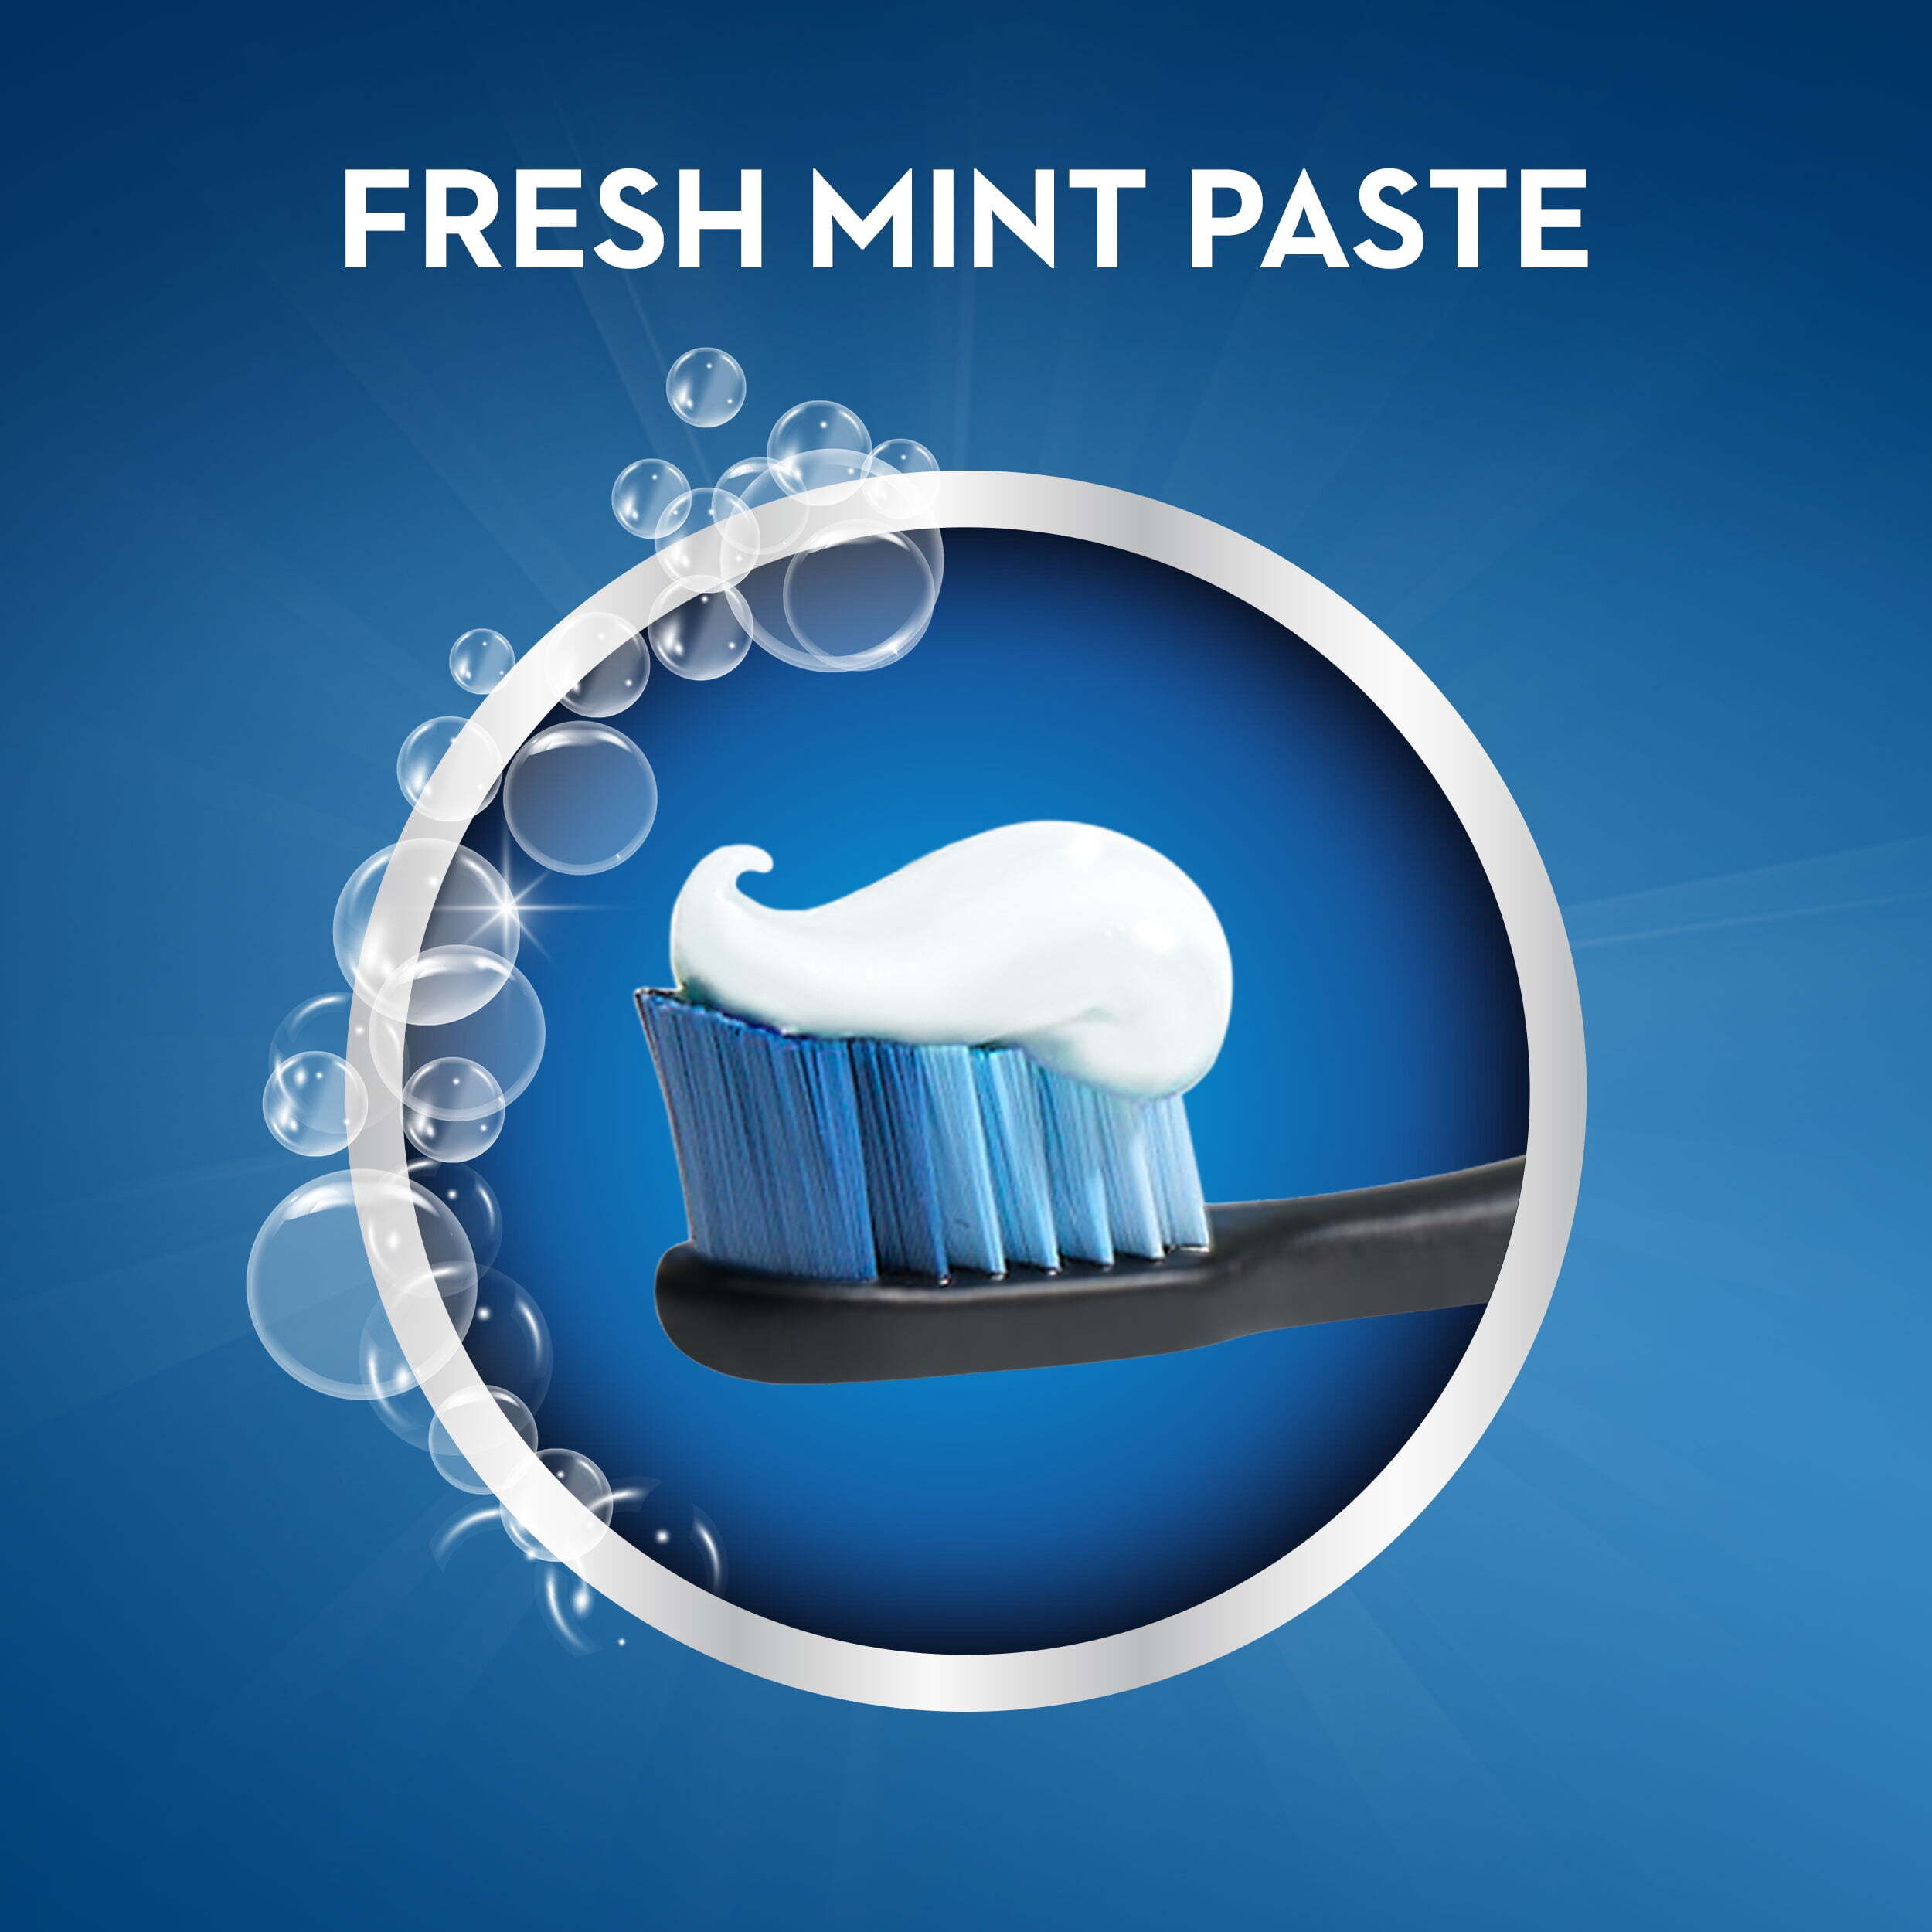 Crest Cavity Protection Toothpaste, Whitening Baking Soda, Fresh Mint, 2.4 oz - image 3 of 7